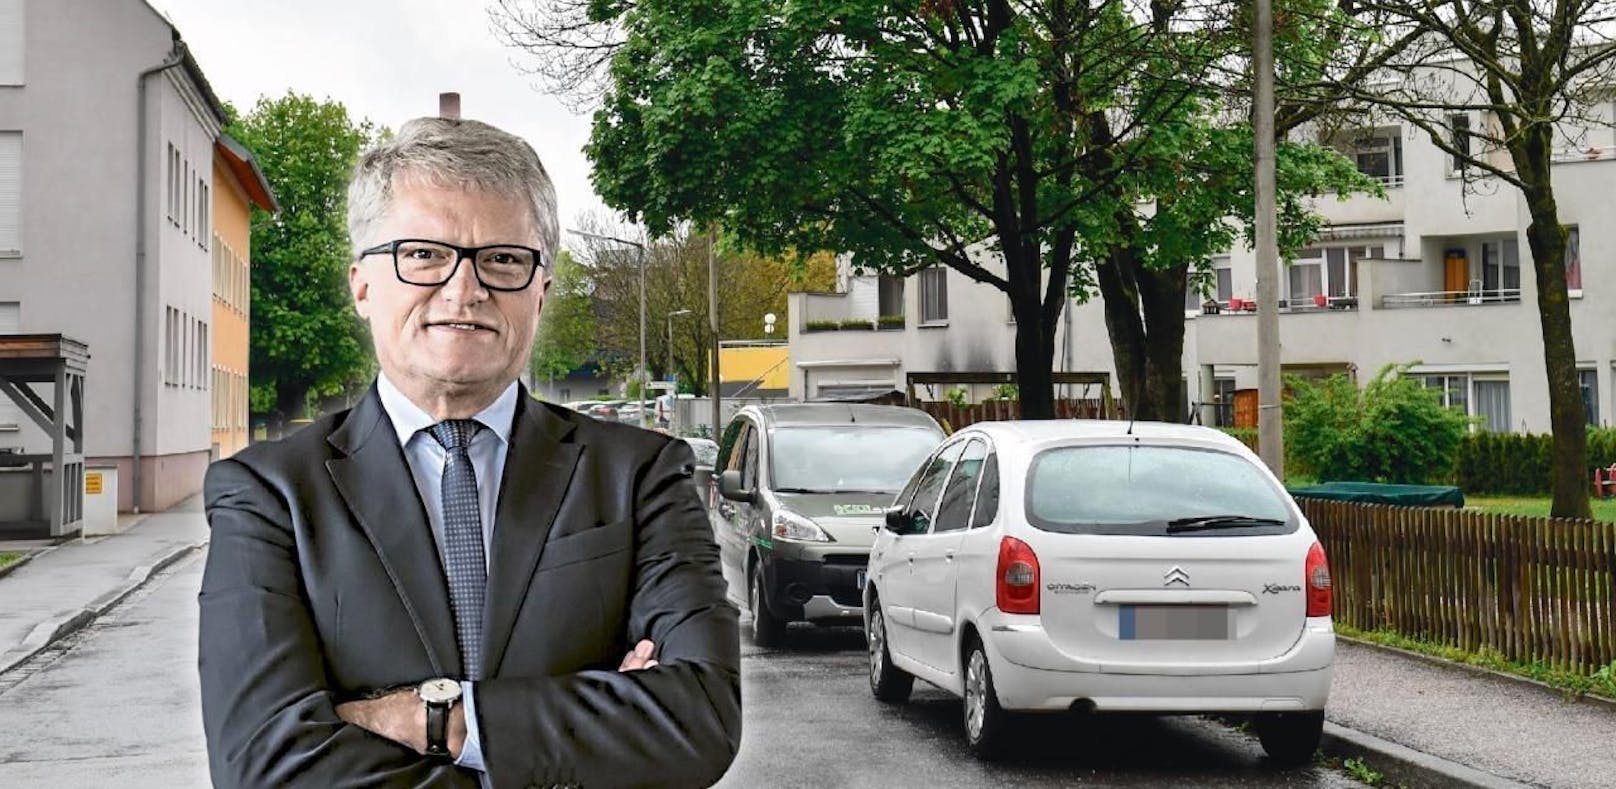 Linz-Bürgermeister Klaus Luger will Linz zur innovativsten Stadt Österreichs machen.